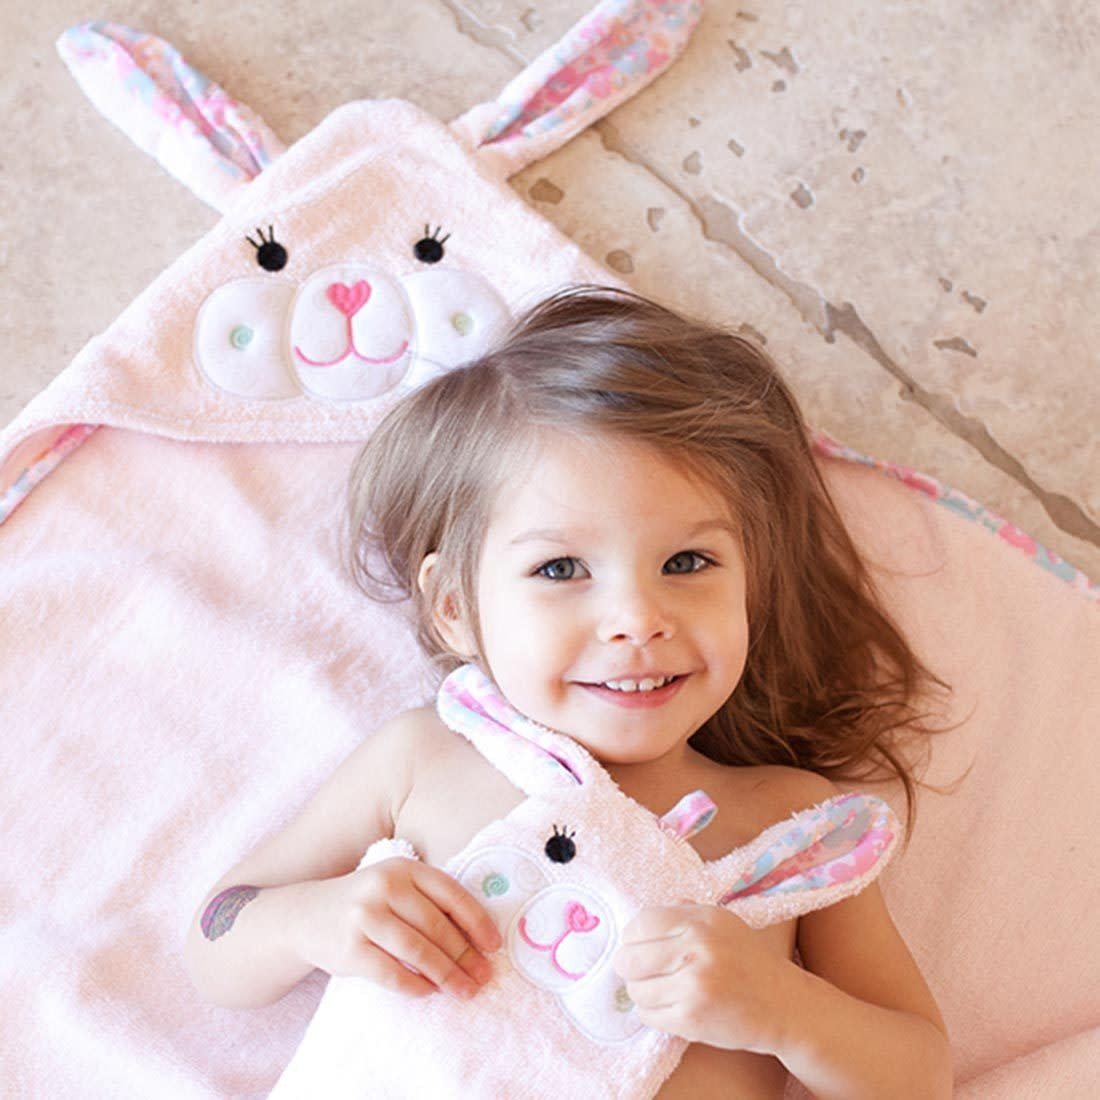 Zoocchini Baby towel - Bunny